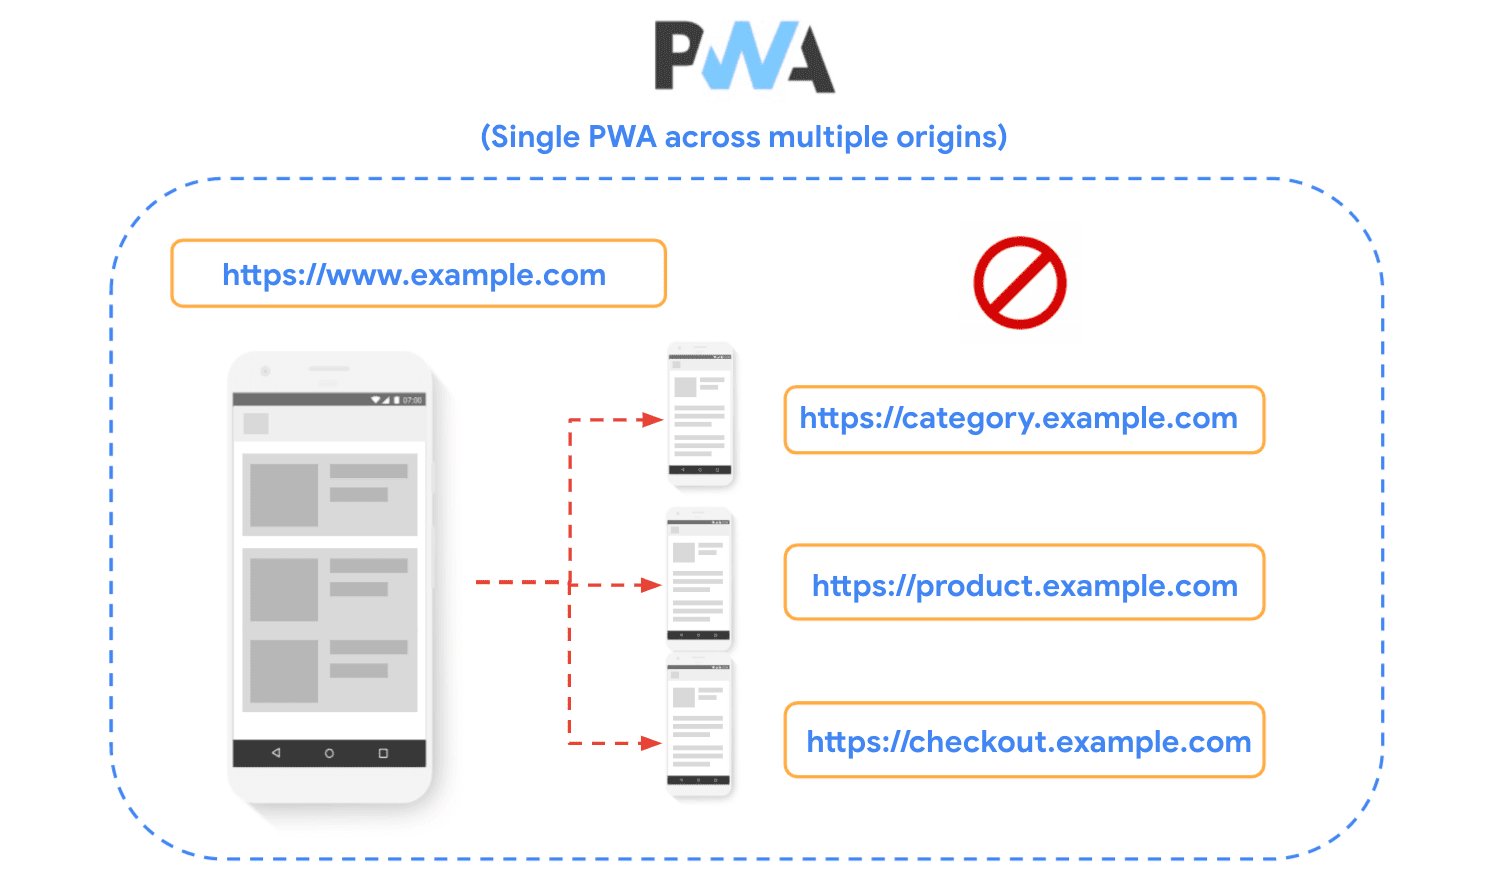 Birden fazla kaynağa bölünmüş bir siteyi gösteren ve PWA&#39;lar oluşturulurken bu tekniğin önerilmediğini gösteren şema.